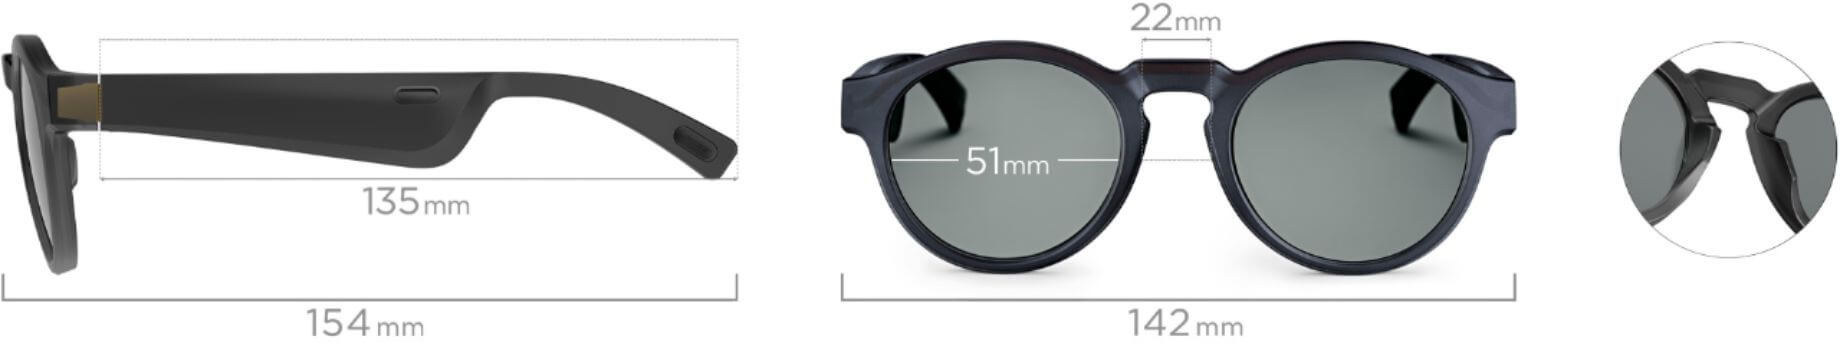 Bose-Frames-Rondo-Bluetooth-Audio-Sunglasses